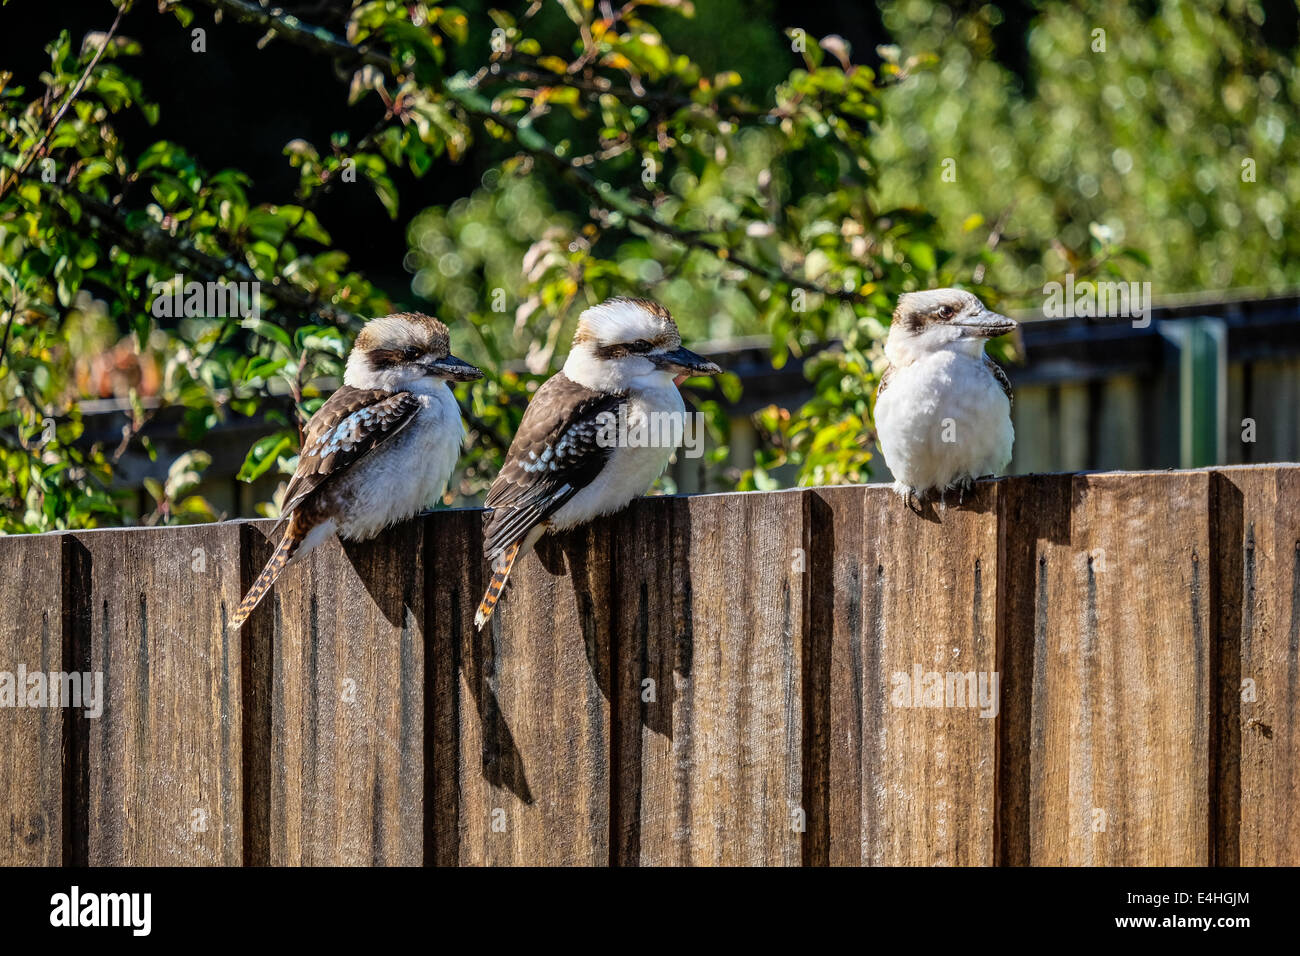 Three kookaburras on a garden fence Stock Photo